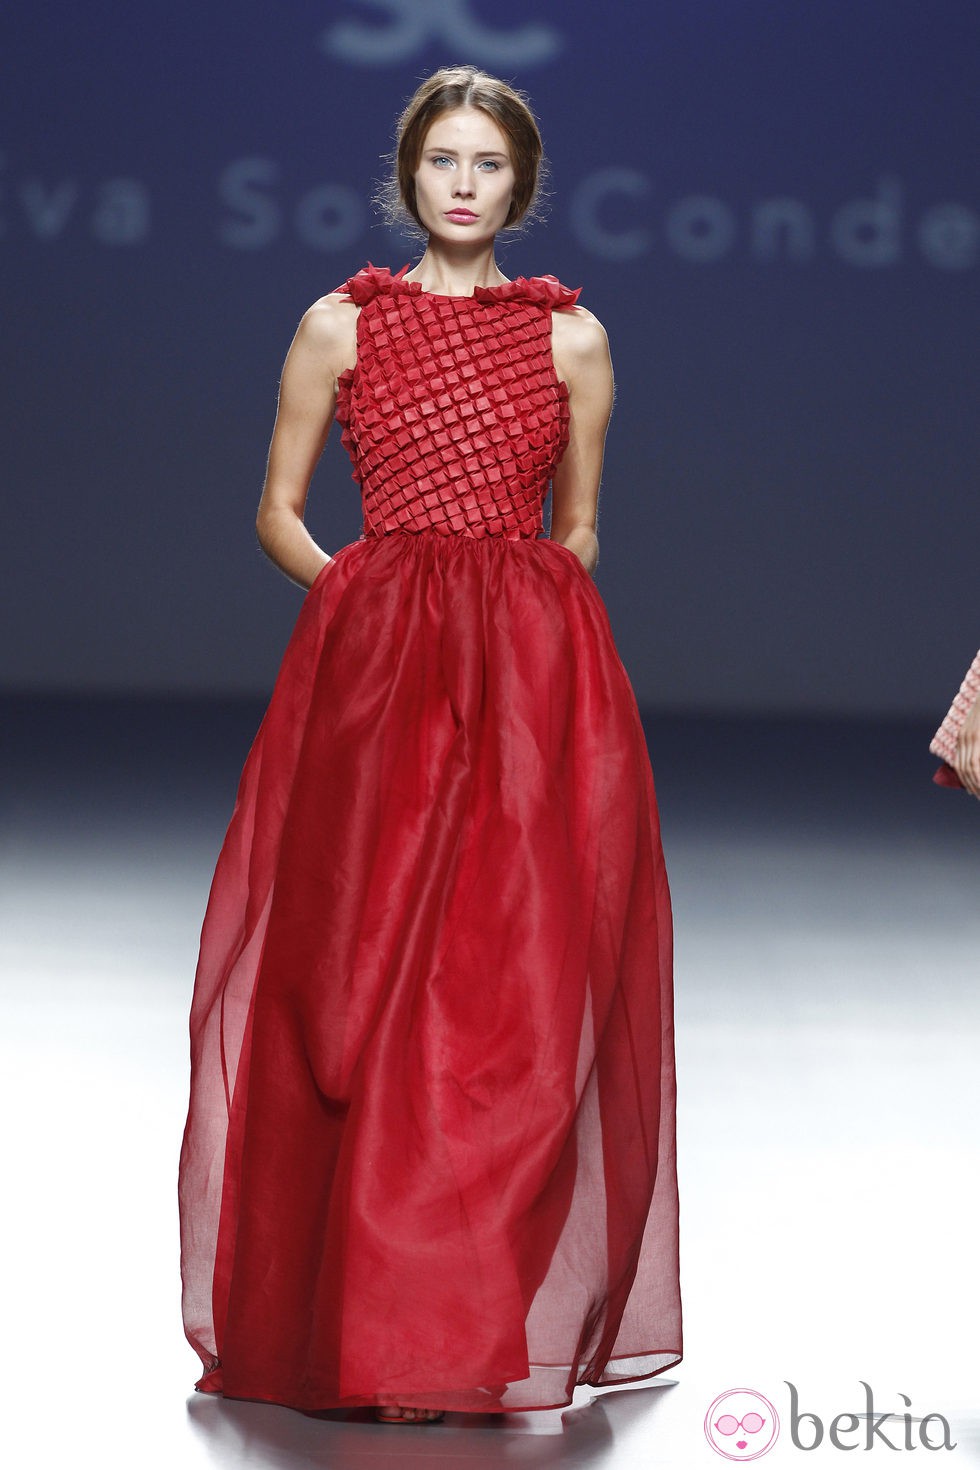 Vestido rojo con corsé de la colección primavera/verano 2014 de Eva Soto Conde en el EGO Madrid Fashion Week.